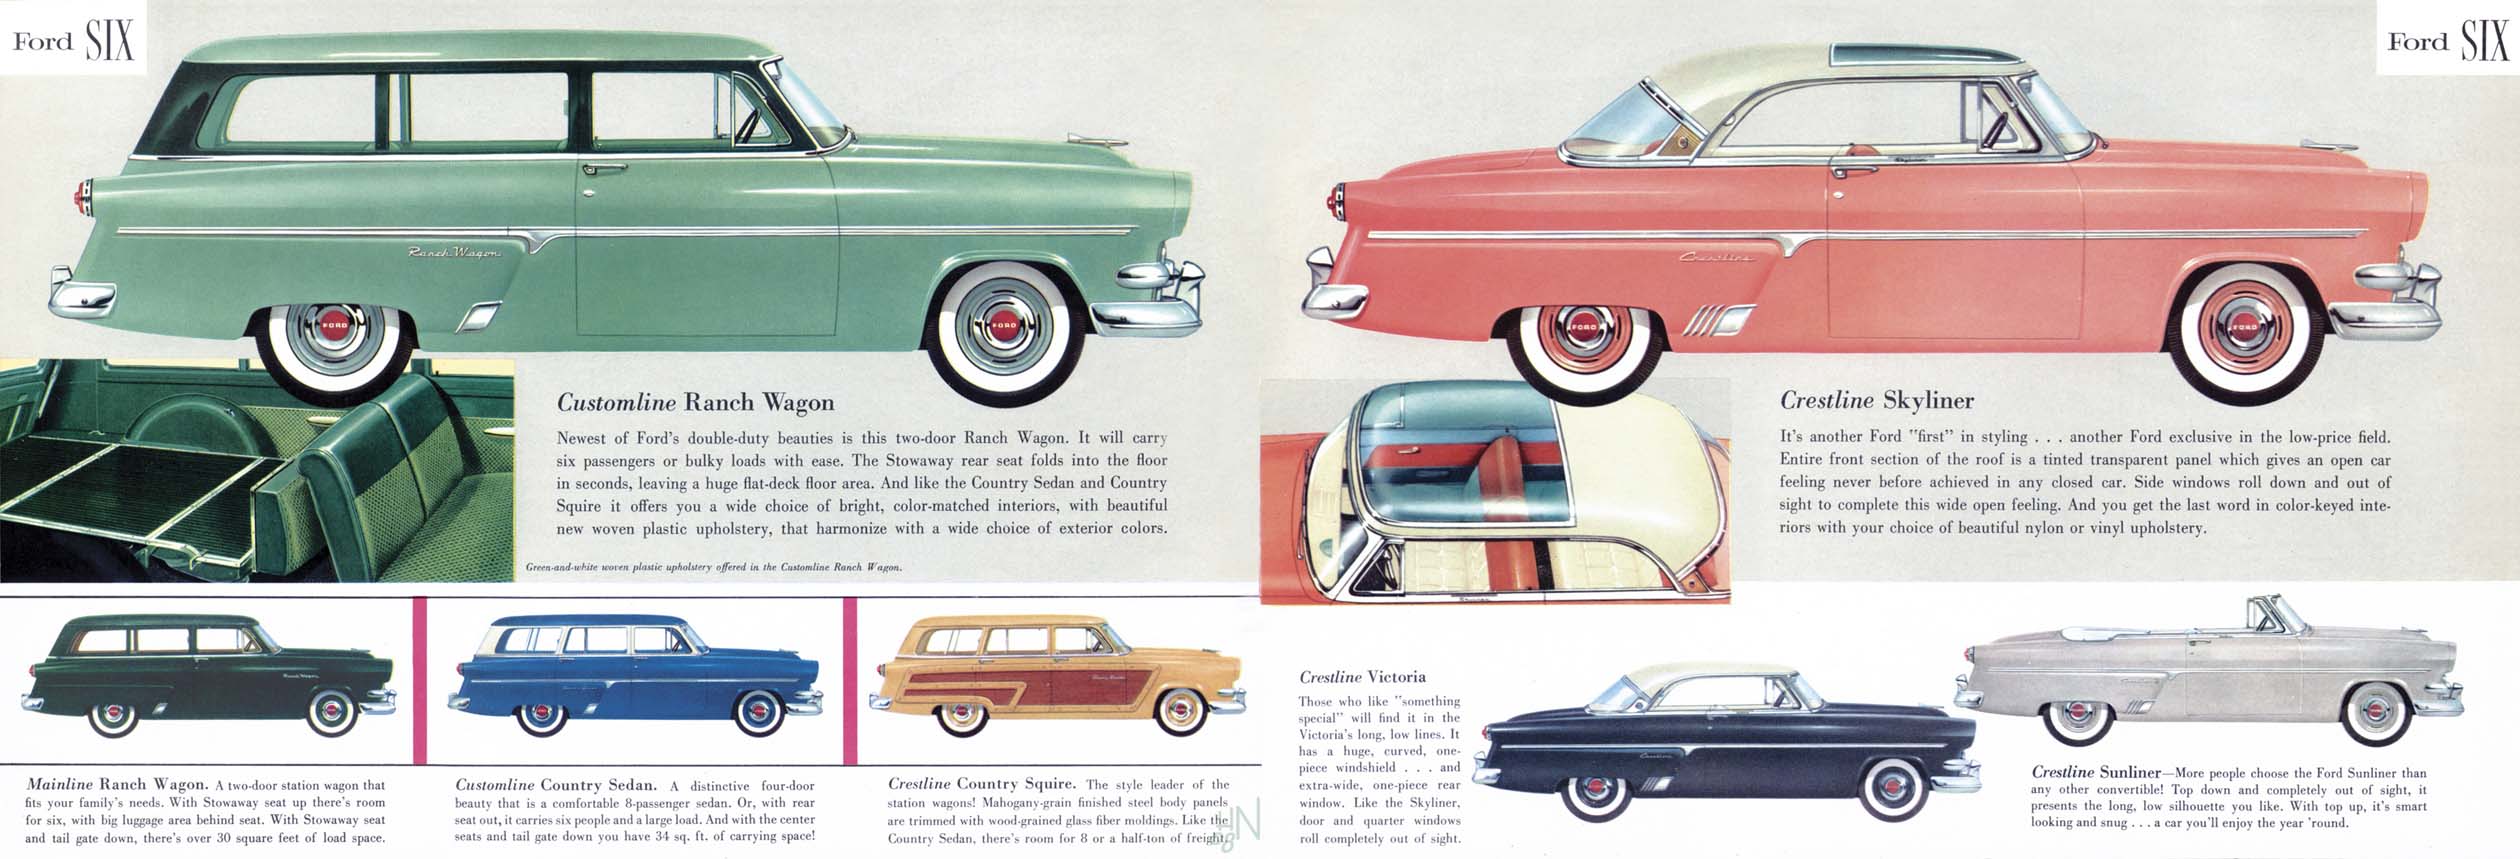 1954 Ford Six-06-07